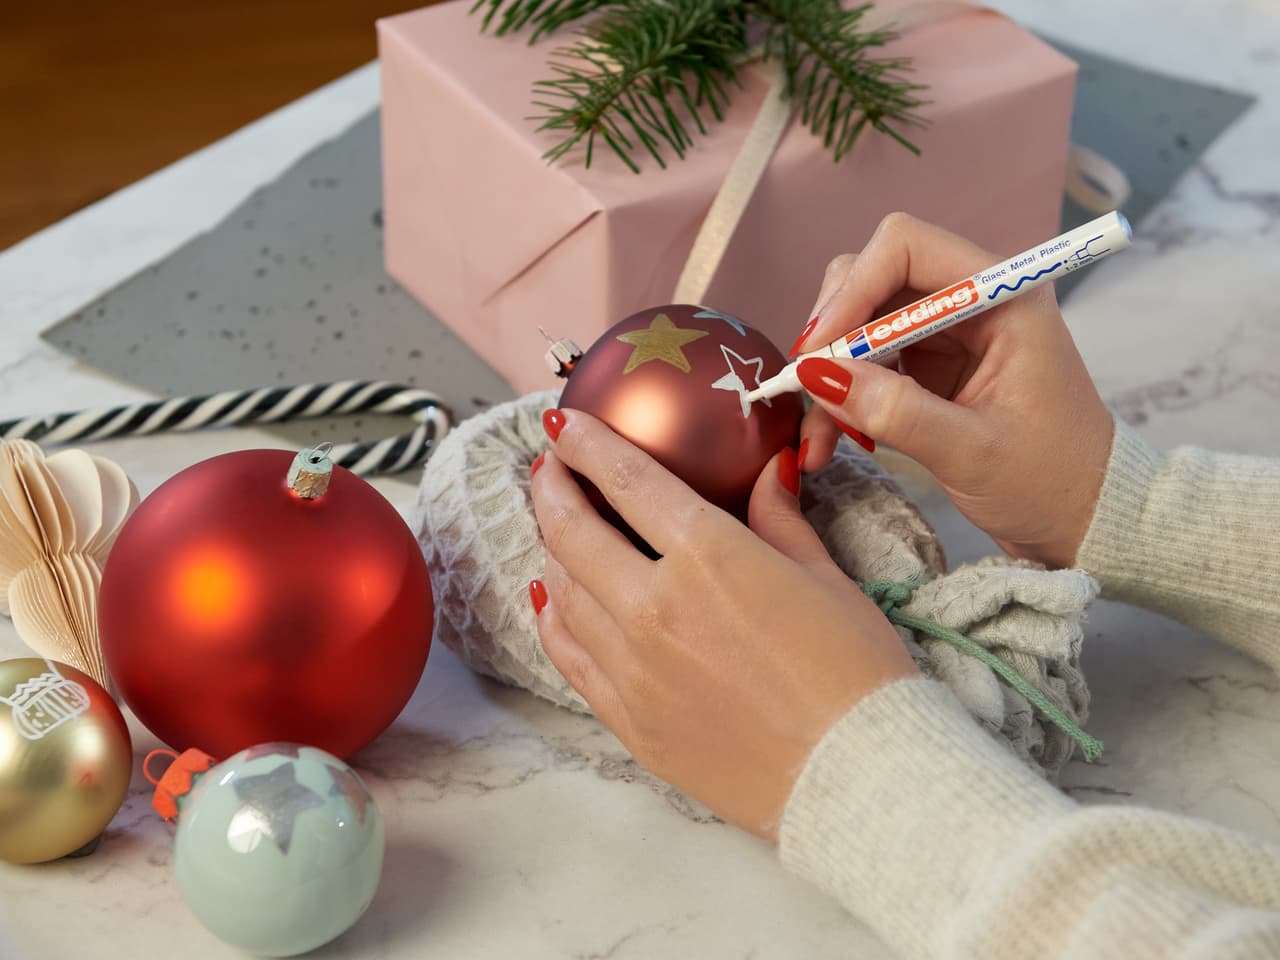 Weihnachtsstimmung individuell gestalten: Mit dem Glanzlackmarker edding 751 schmücken die Hände zart einen Weihnachtsschmuck mit festlichen Sternen.